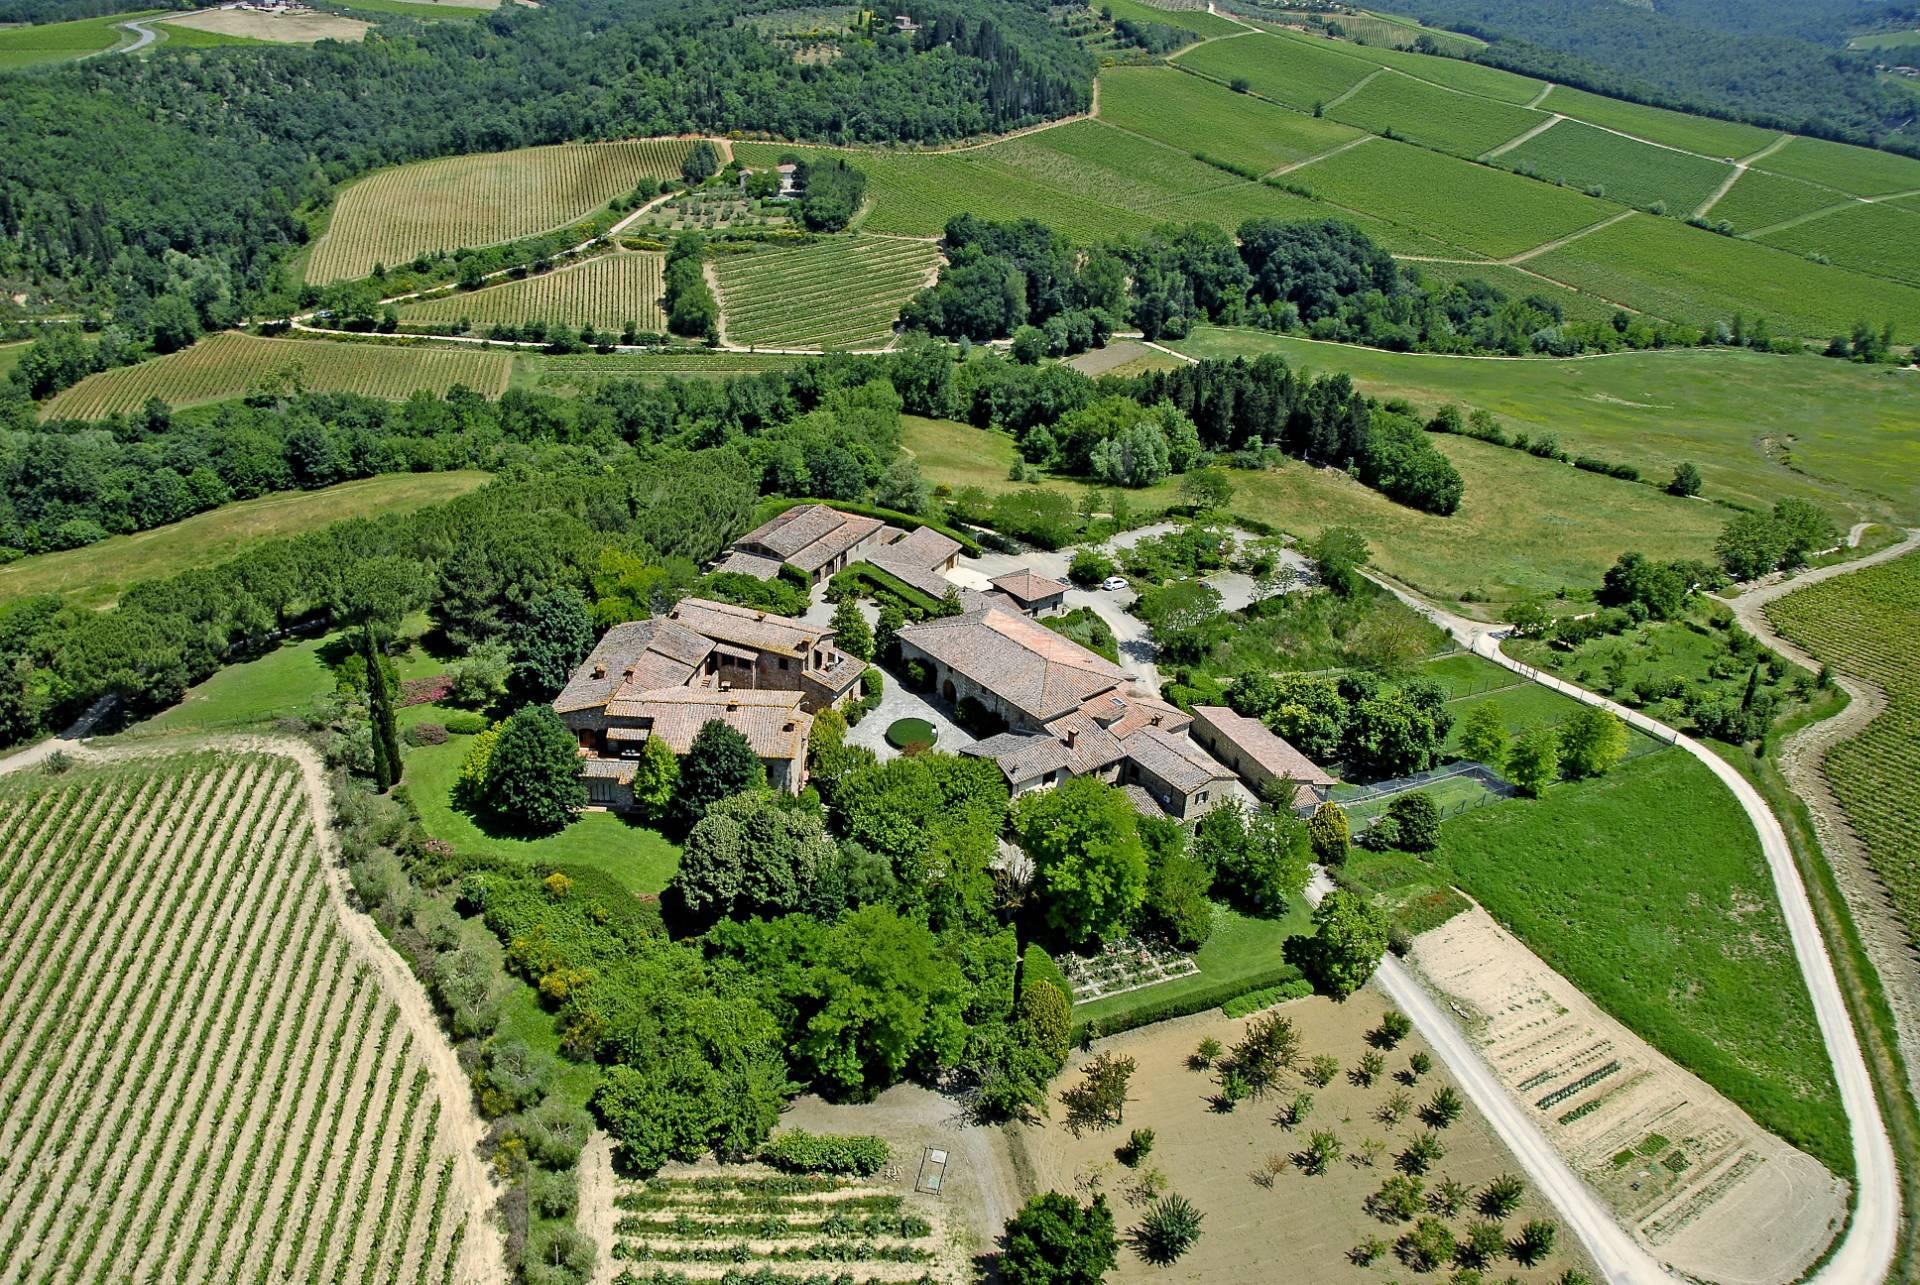 Esclusive wine estate in the heart of Chianti classico - 1